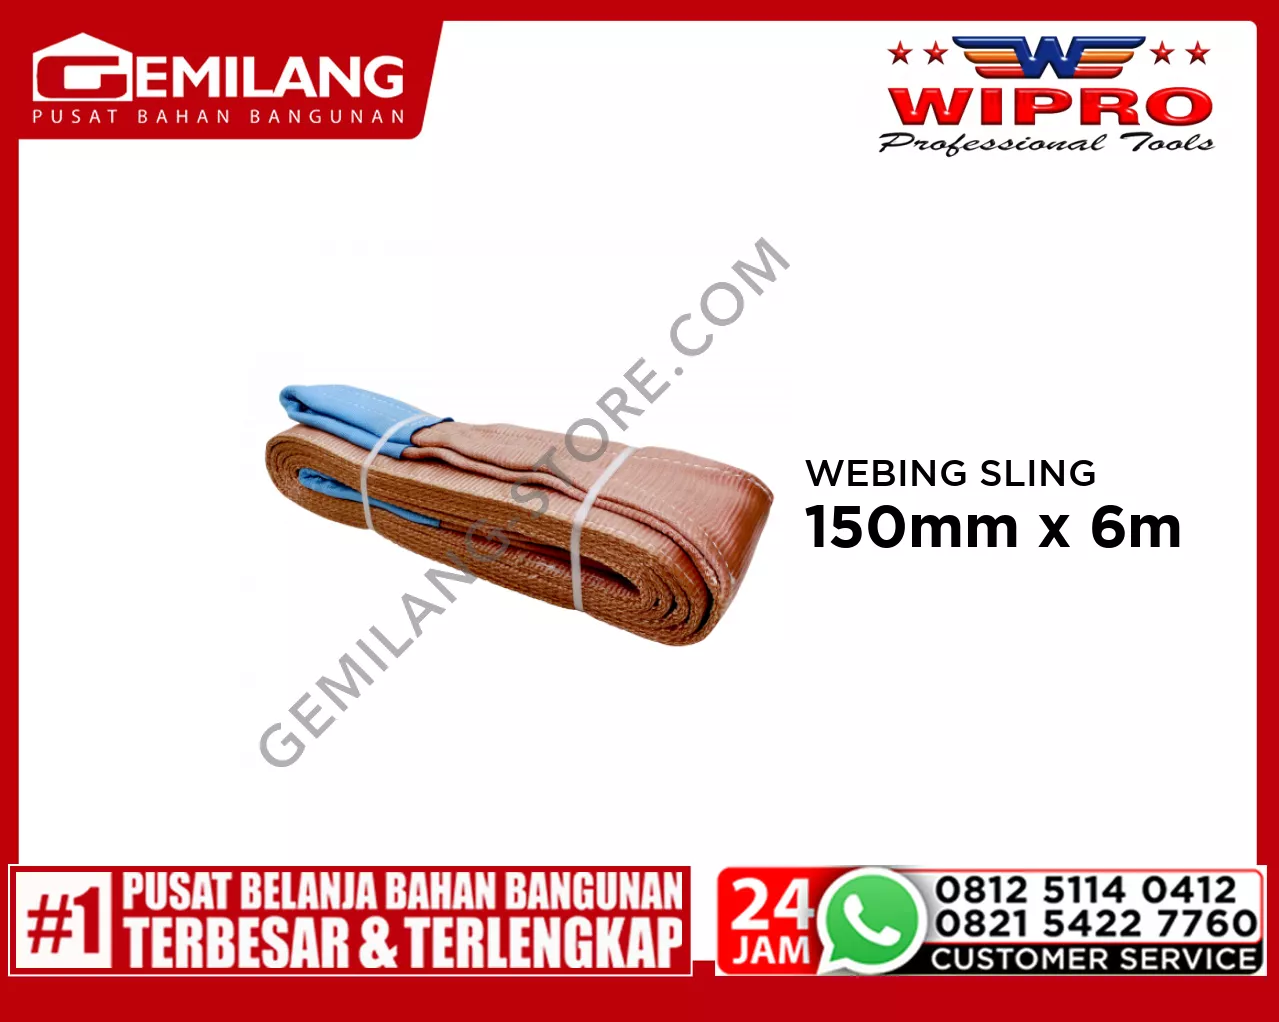 WIPRO WEBING SLING WLL 6T6 (COKLAT) 150mm x 6m